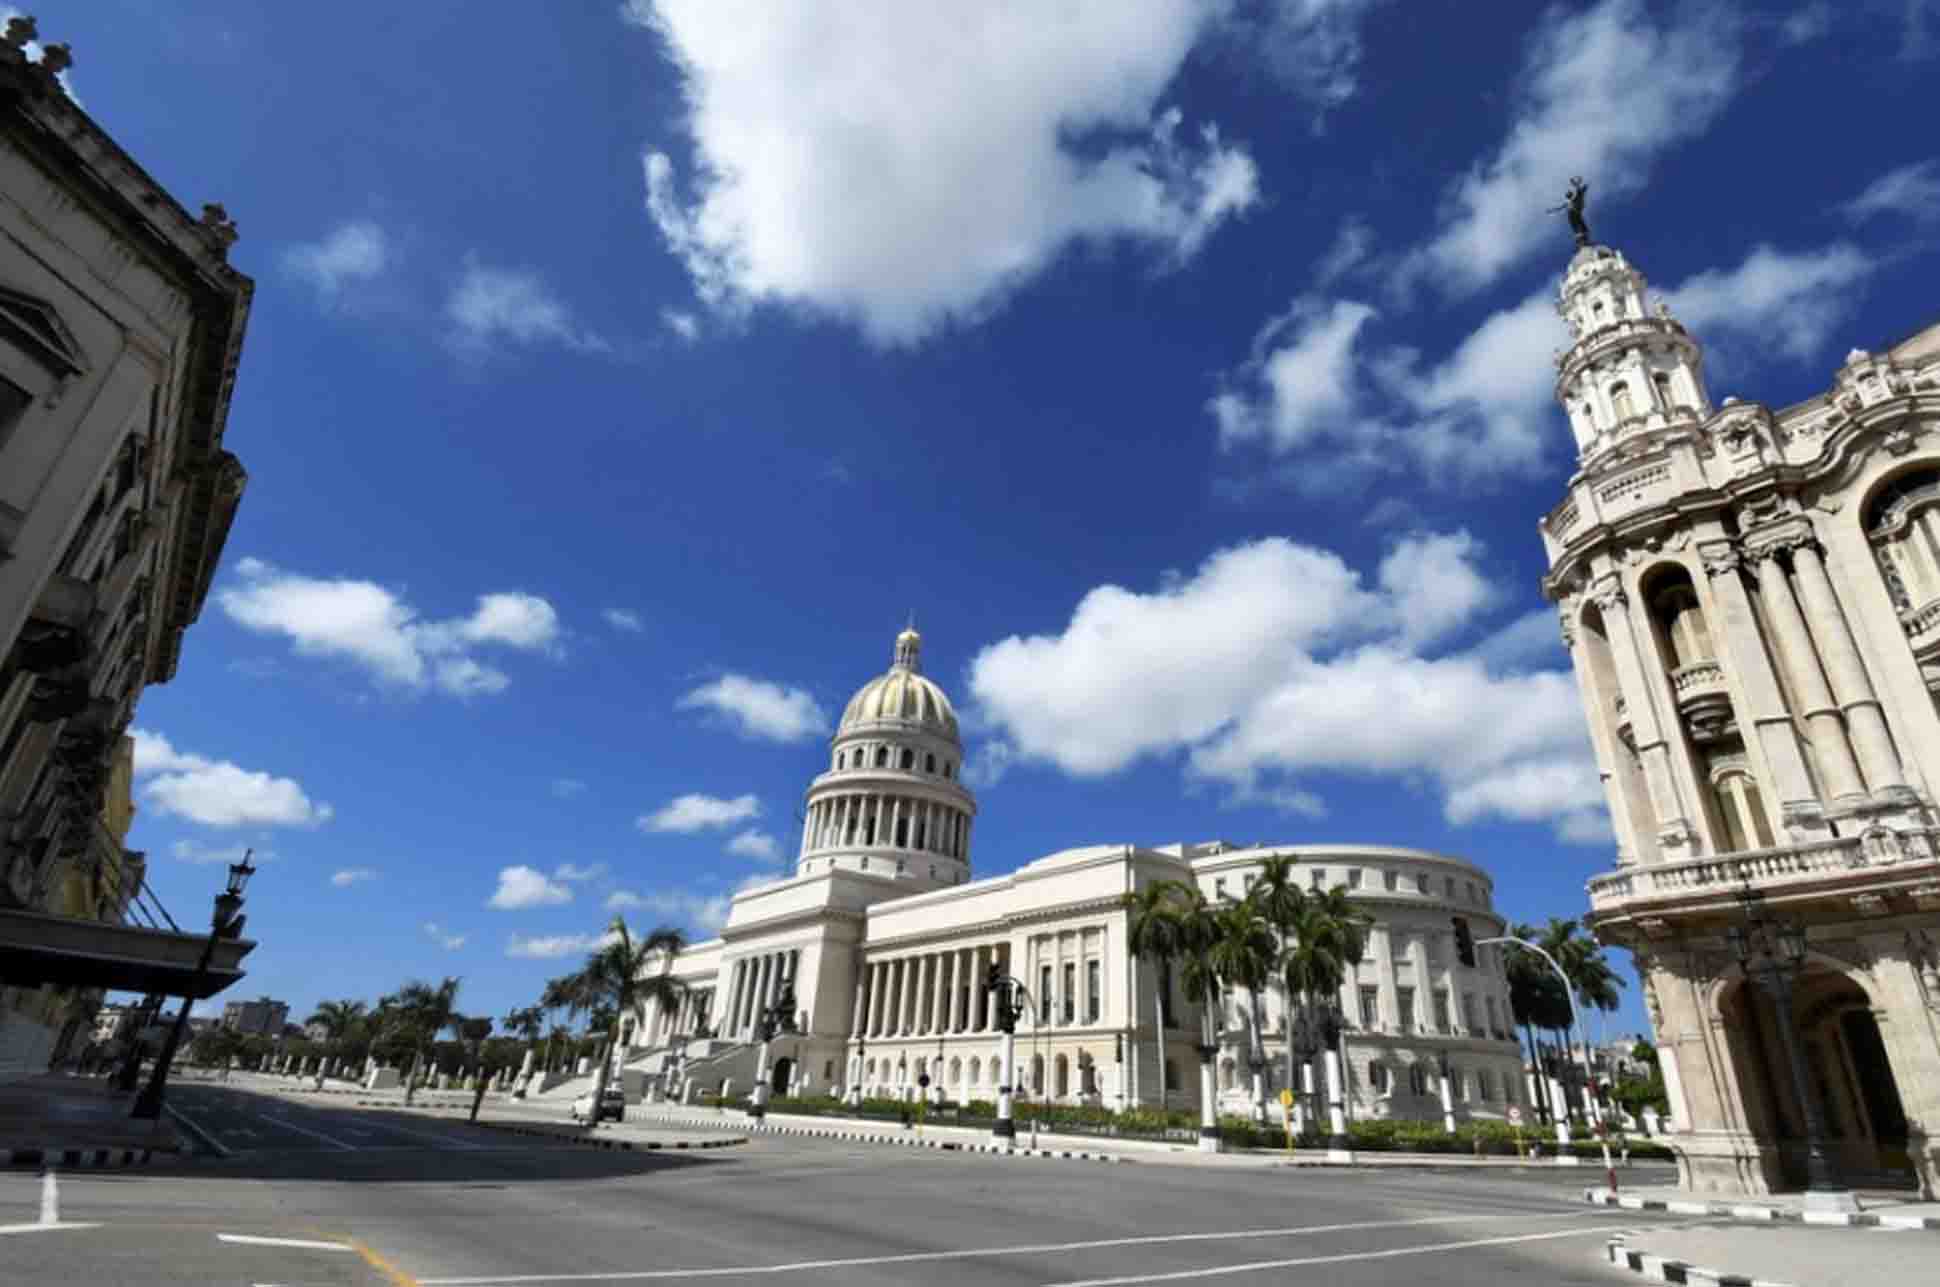  Política de EE.UU. hacia Cuba ha fracasado, dice académico cubano